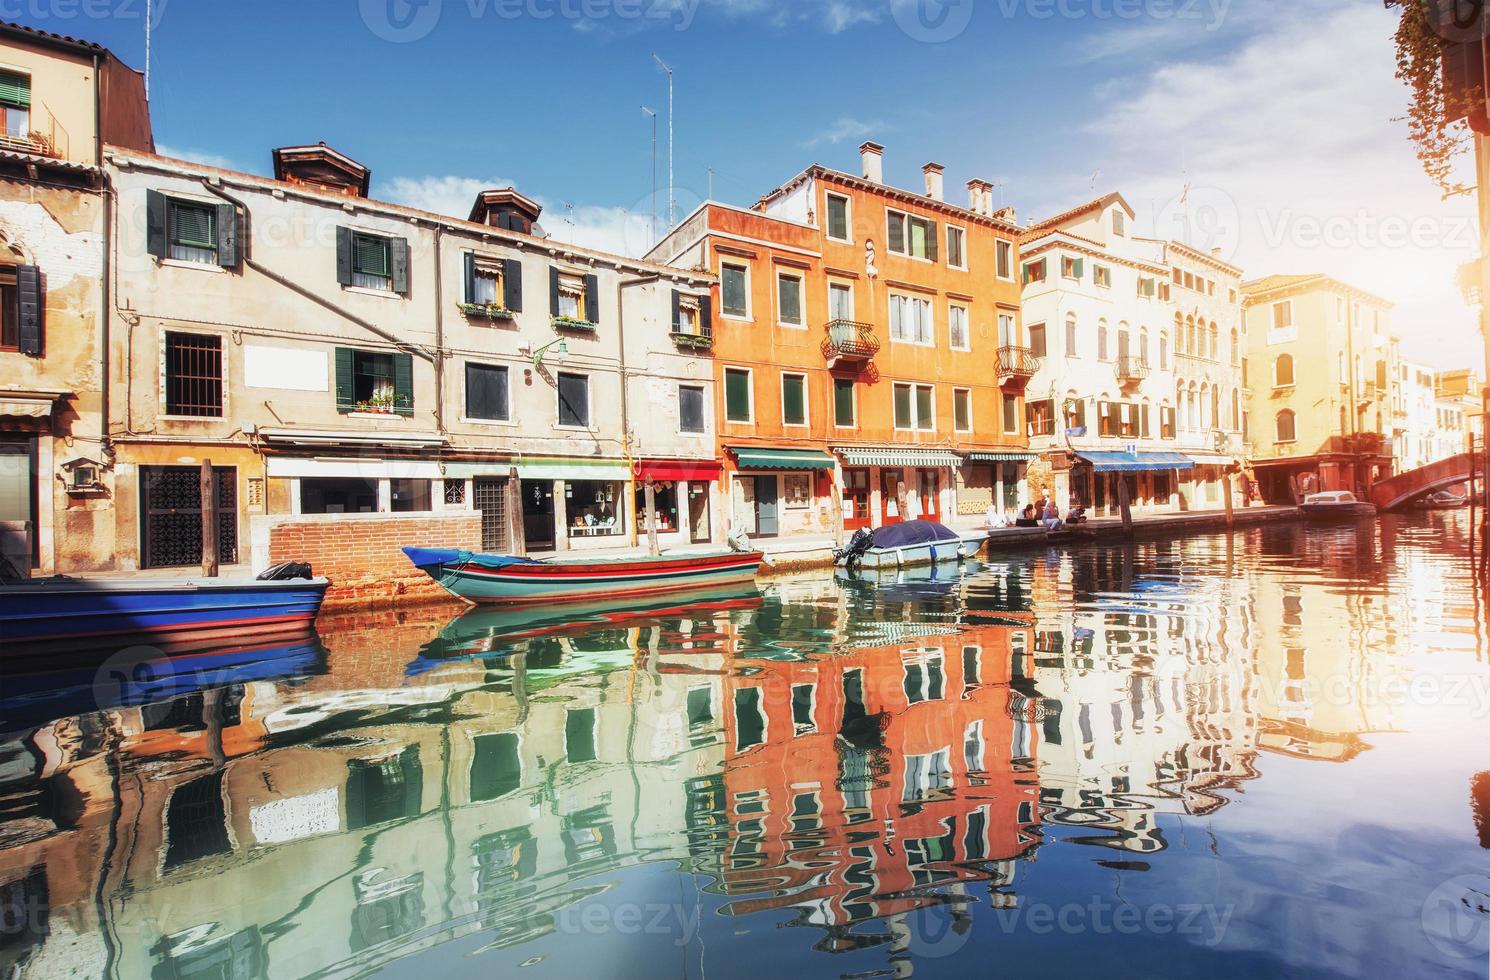 canal de água verde com gôndolas e fachadas coloridas de antigos edifícios medievais ao sol em veneza, itália. foto